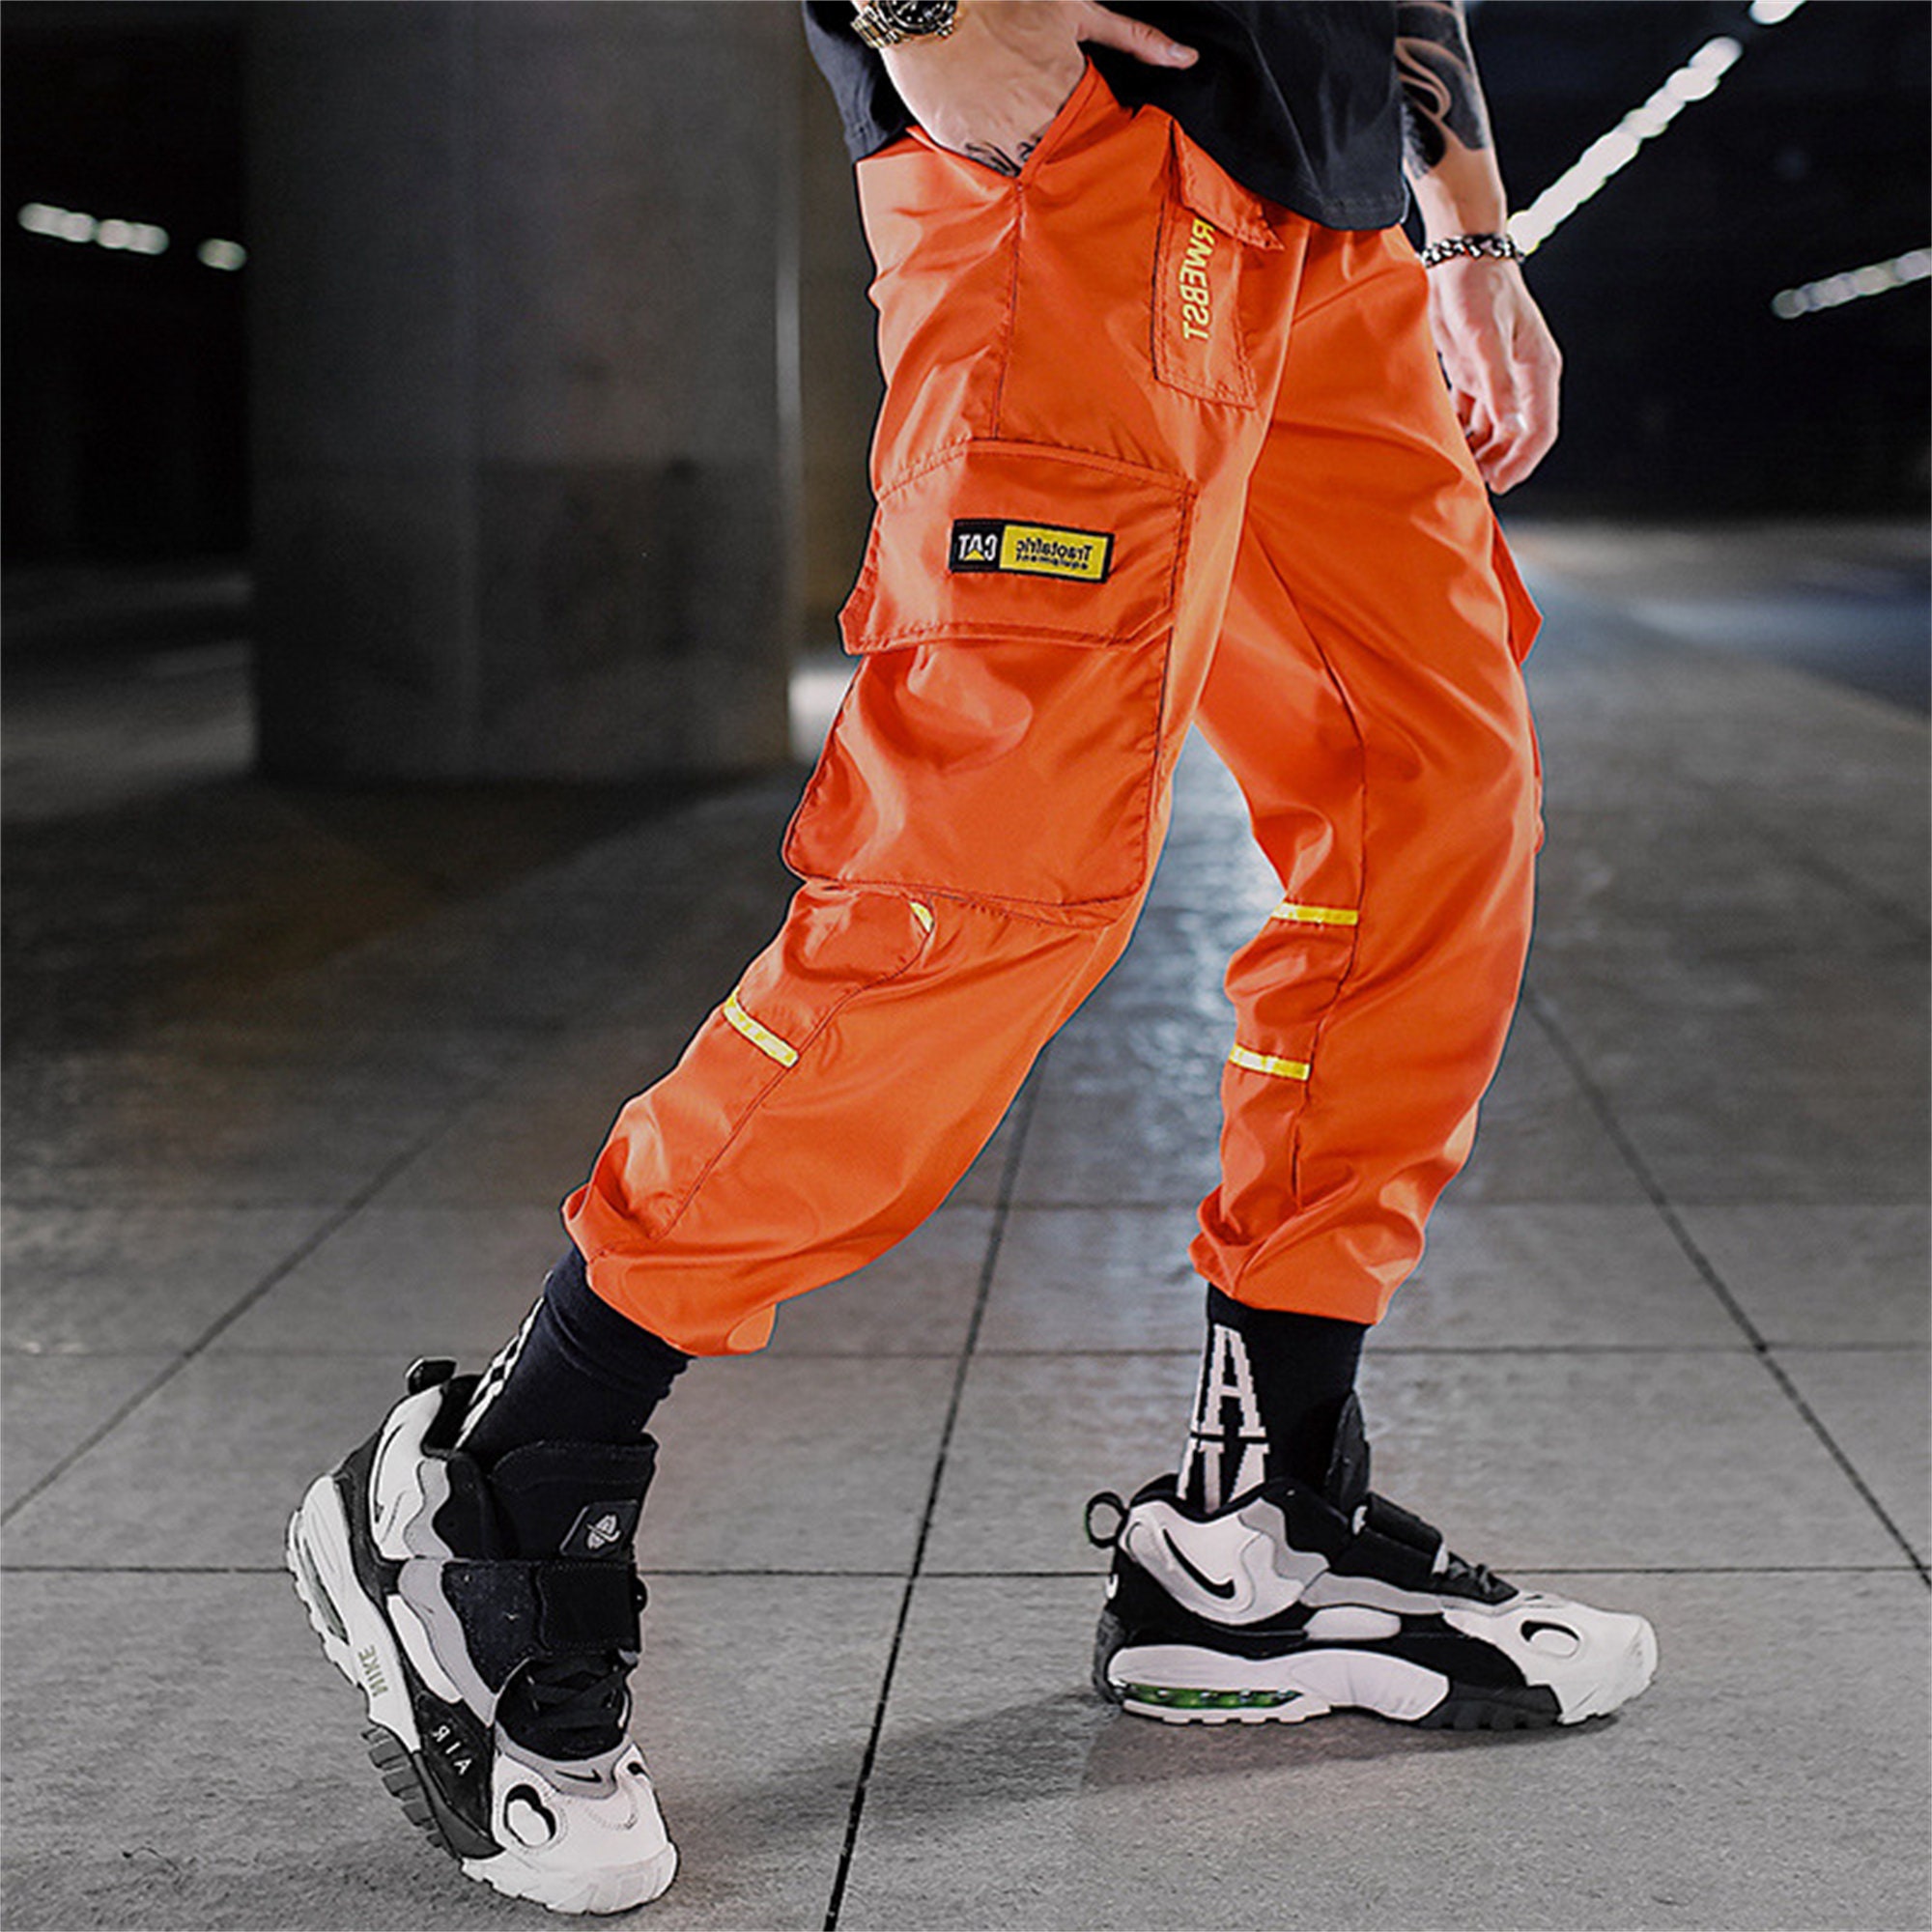 Orange Techwear Pants Goth Cargo Pants Cyberpunk Streetwear | Etsy